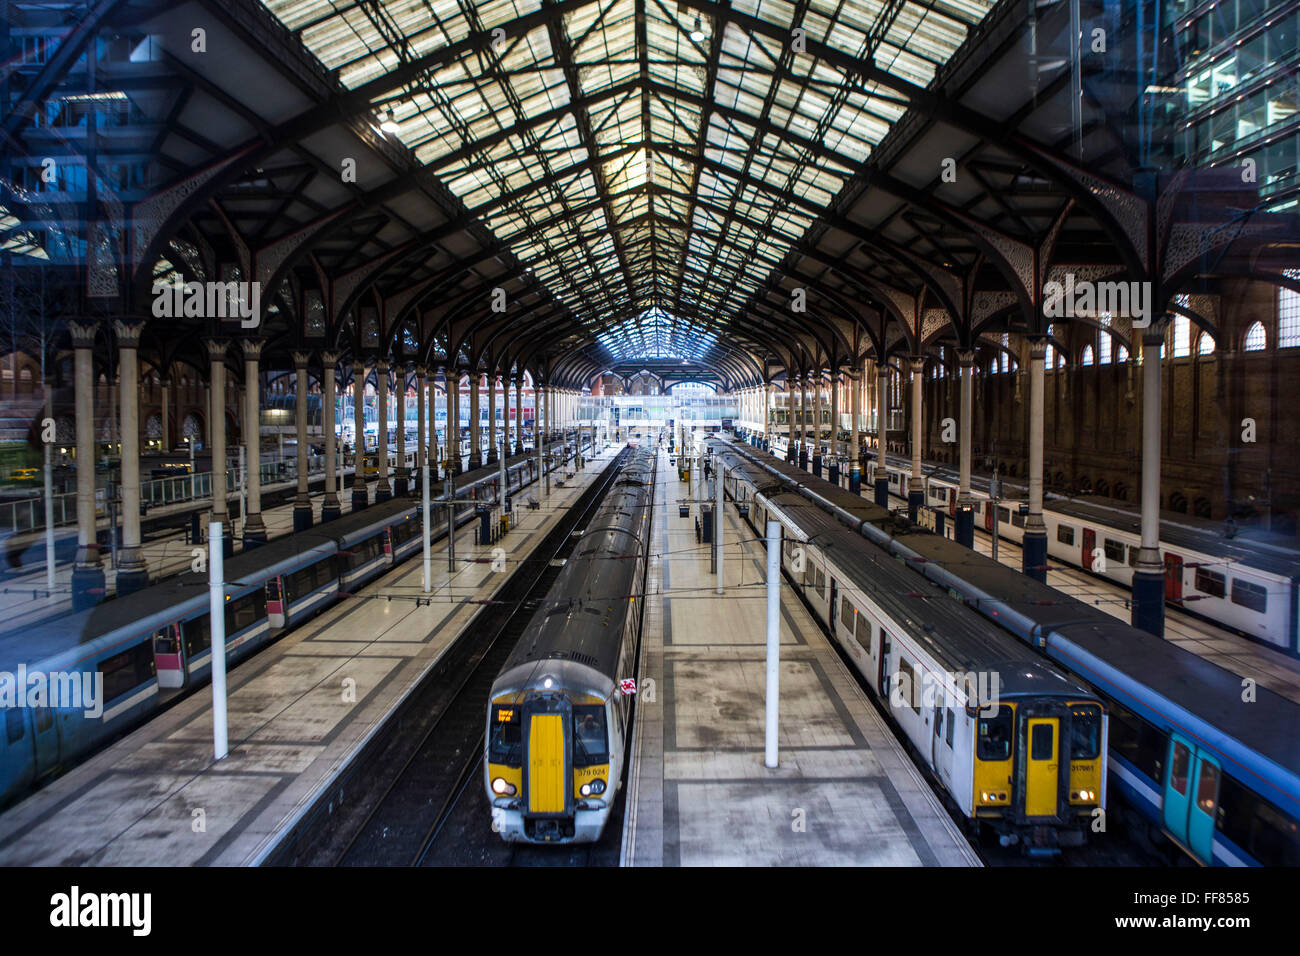 Die Züge warten neben vielen Plattformen zur Liverpool Street Station in London, Vereinigtes Königreich. Diese Station verbindet Eisenbahnstrecken mit anderen öffentlichen Verkehrsmitteln. Stockfoto